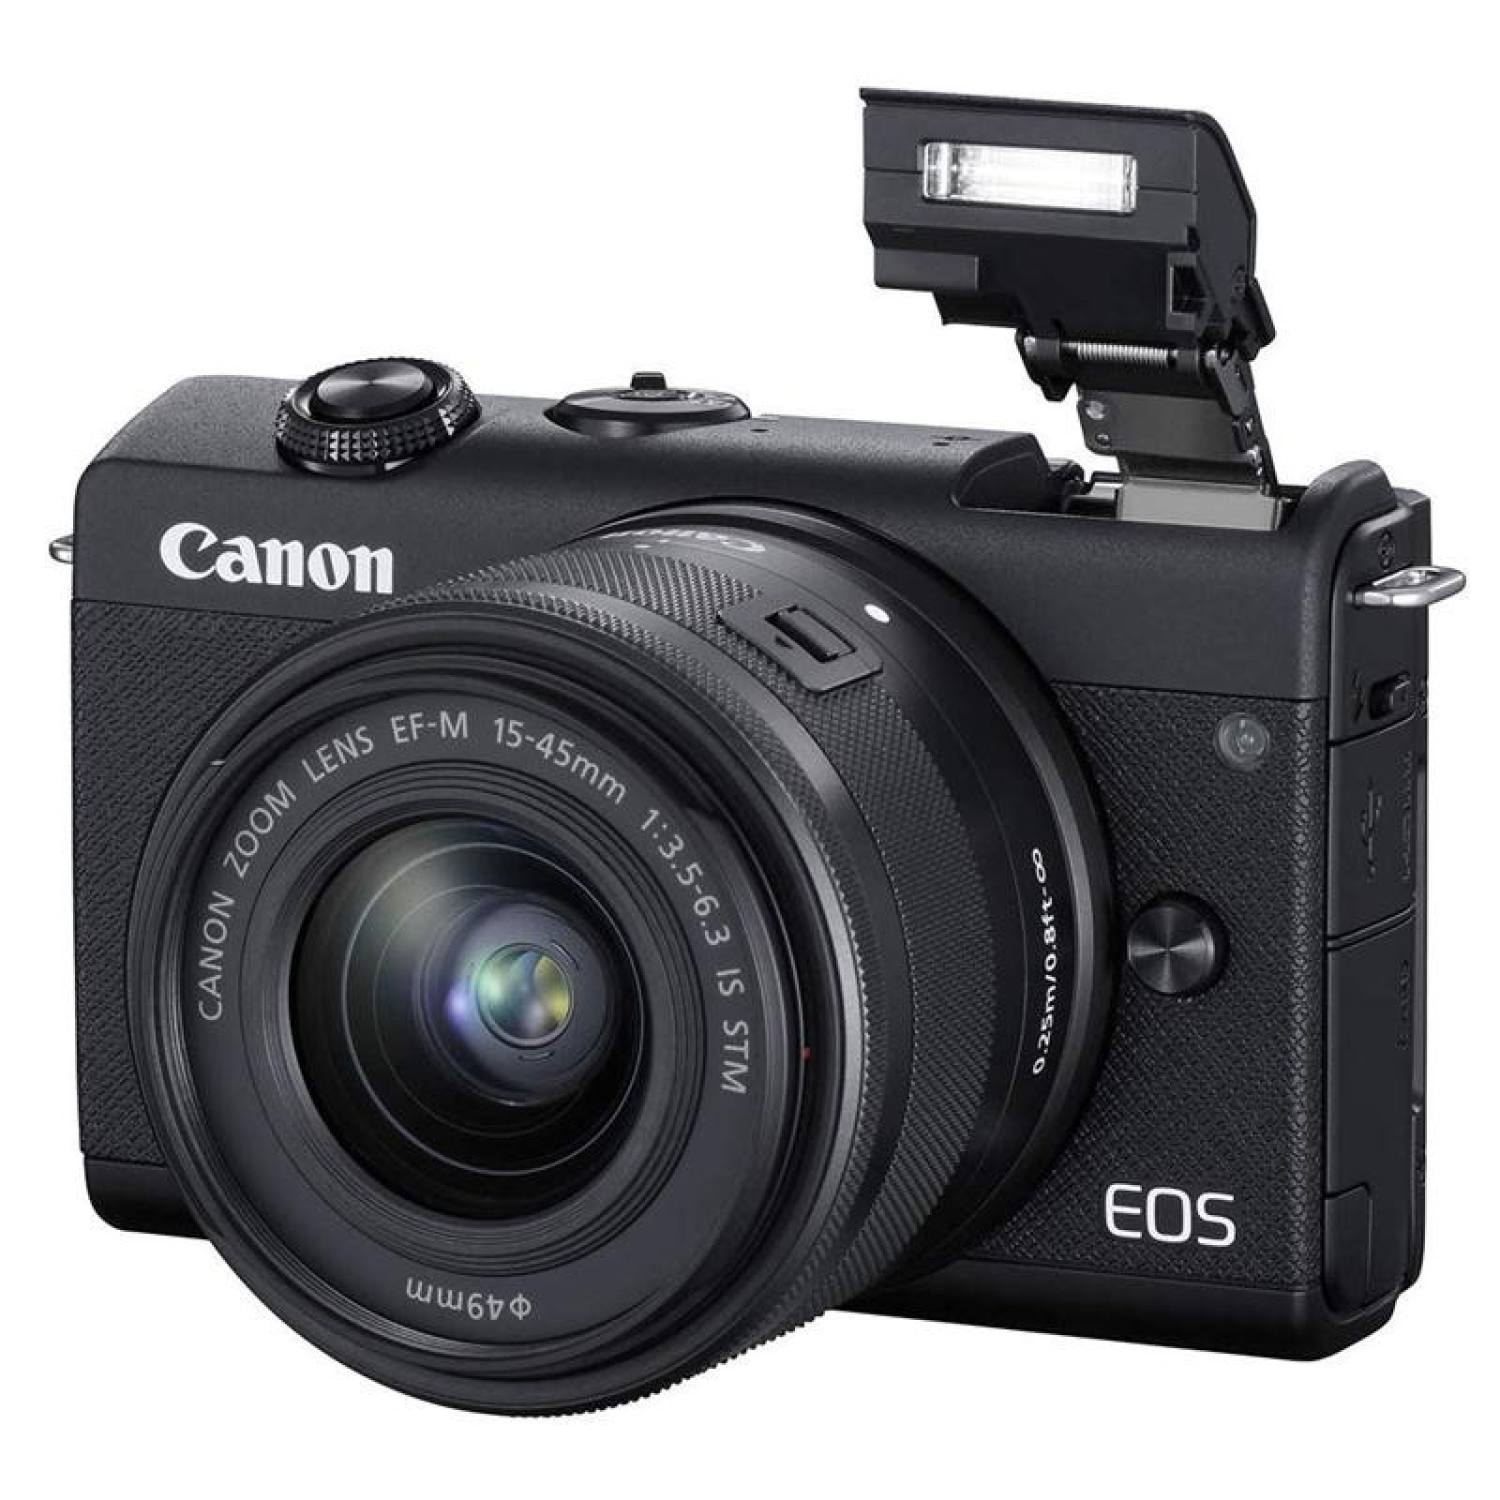 Máy ảnh Canon EOS M200 kit 15-45 BK/WH (Đen/Trắng) – Hàng Chính Hãng Lê Bảo Minh